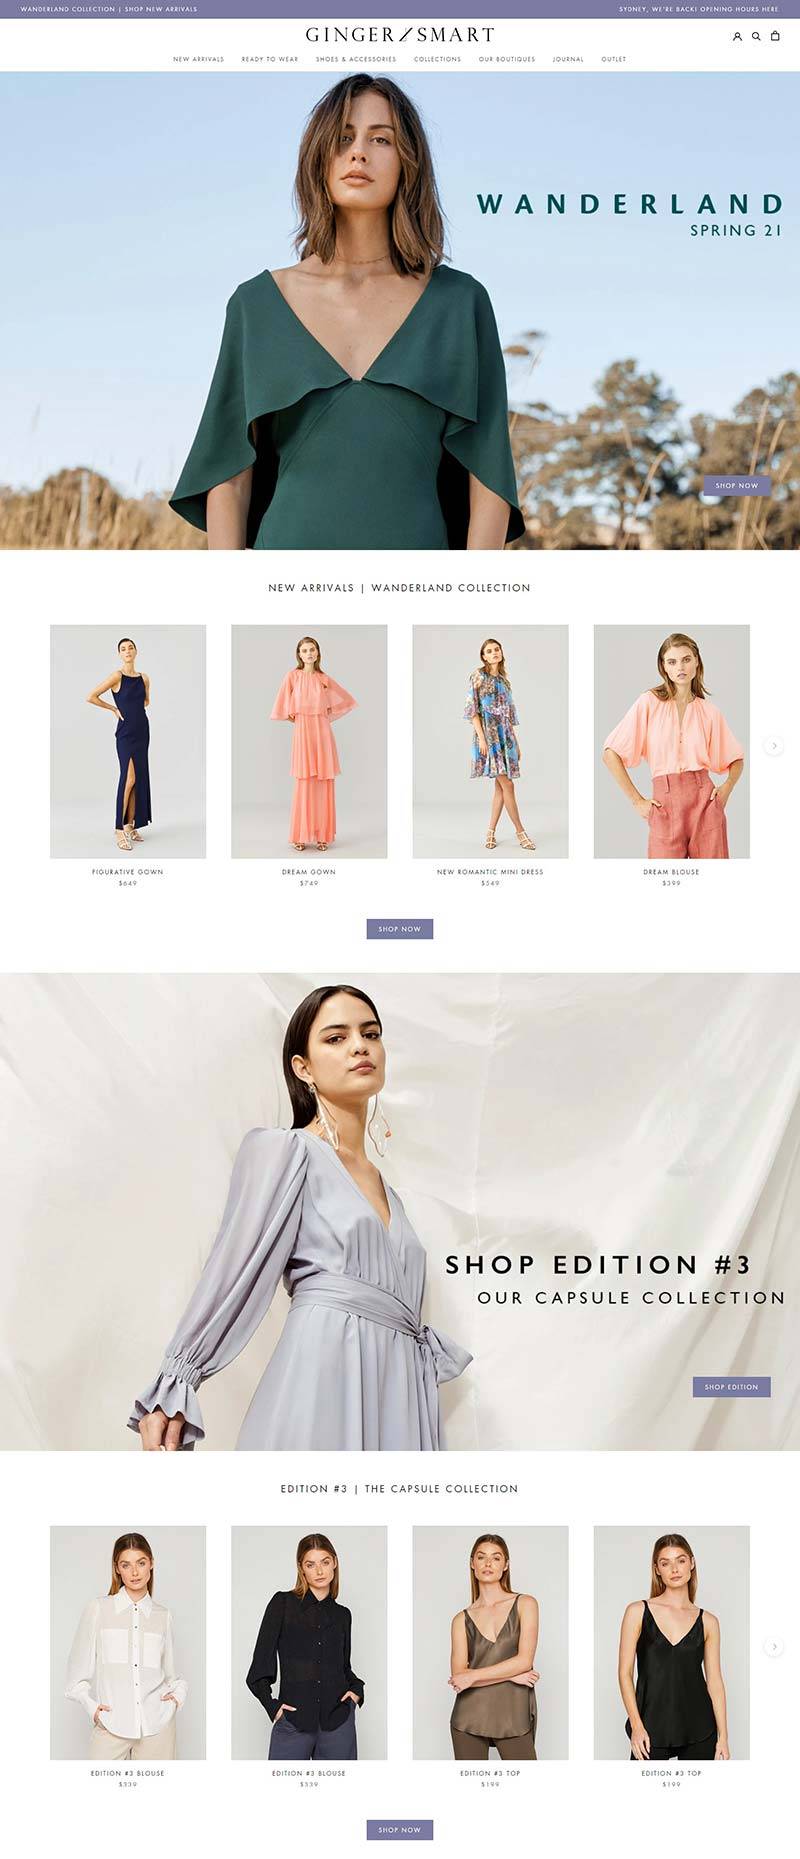 Ginger & Smart 澳大利亚女性服饰品牌购物网站物网站